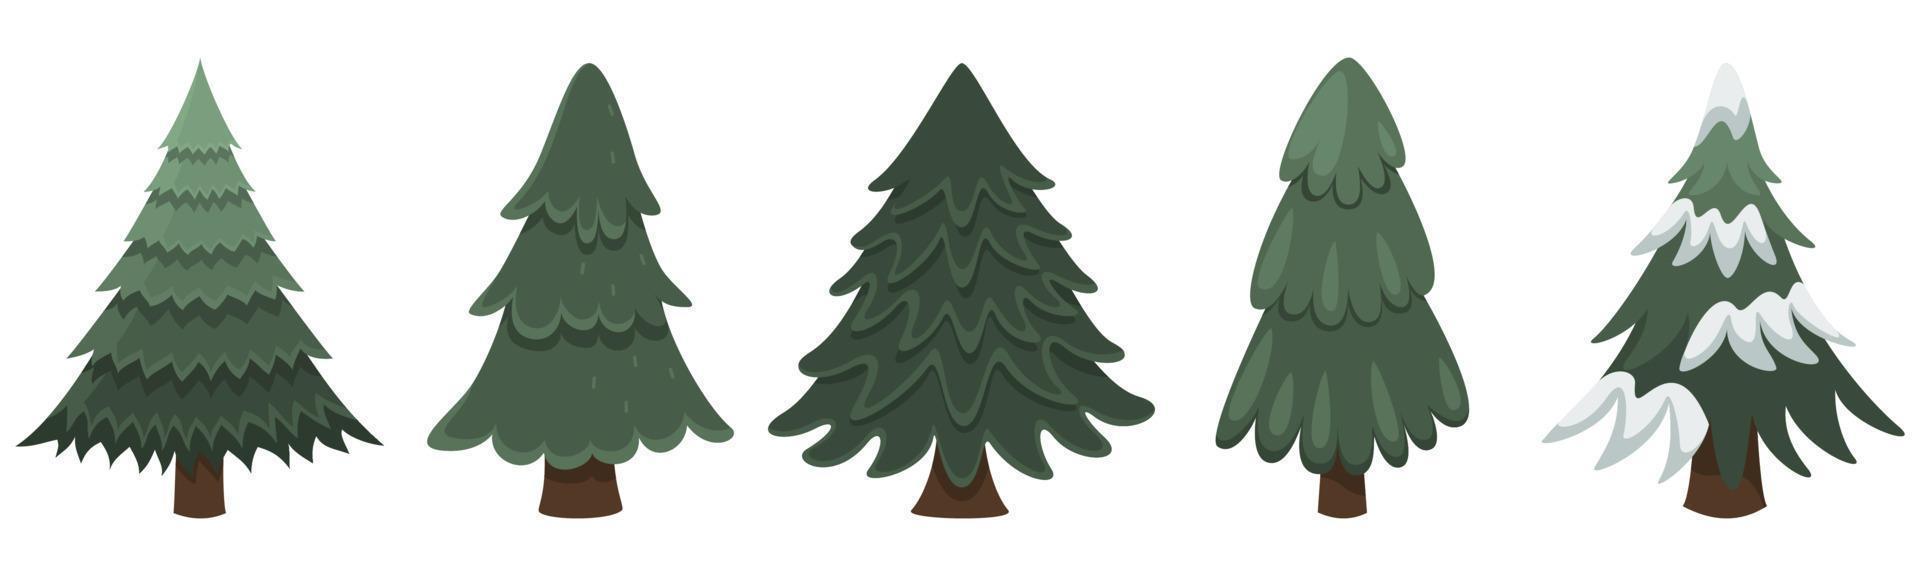 sammlung von weihnachtsbäumen, neujahr und weihnachten. Vektorillustration vektor